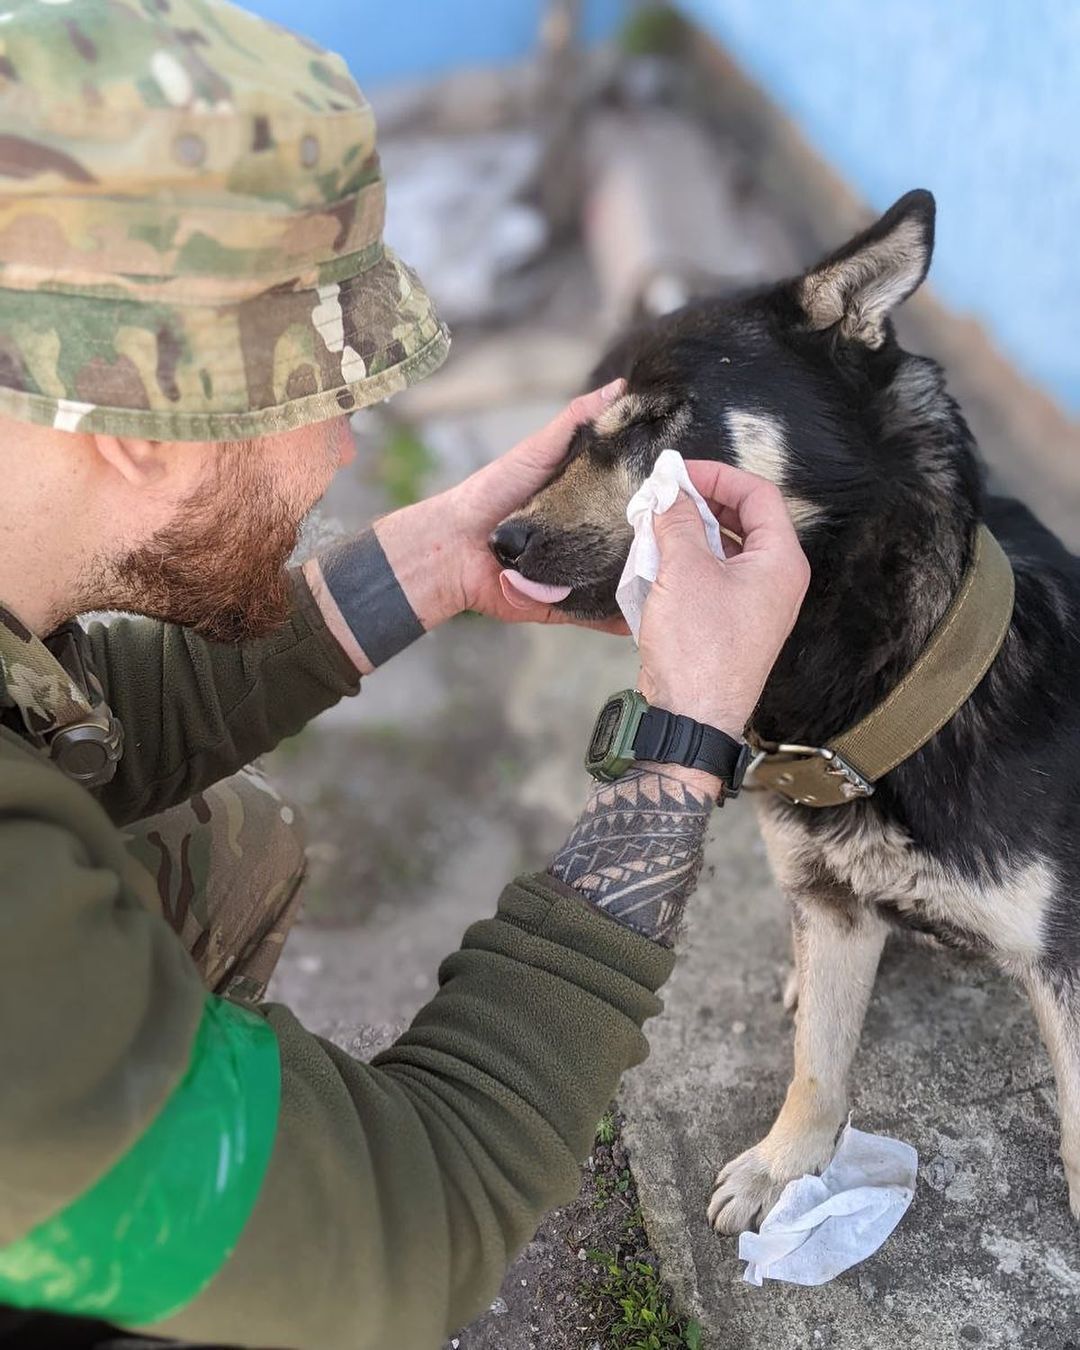 Під обстрілом рятував собак зі школи, що горіла: командир підрозділу та віцечемпіон Європи не зміг кинути тварин